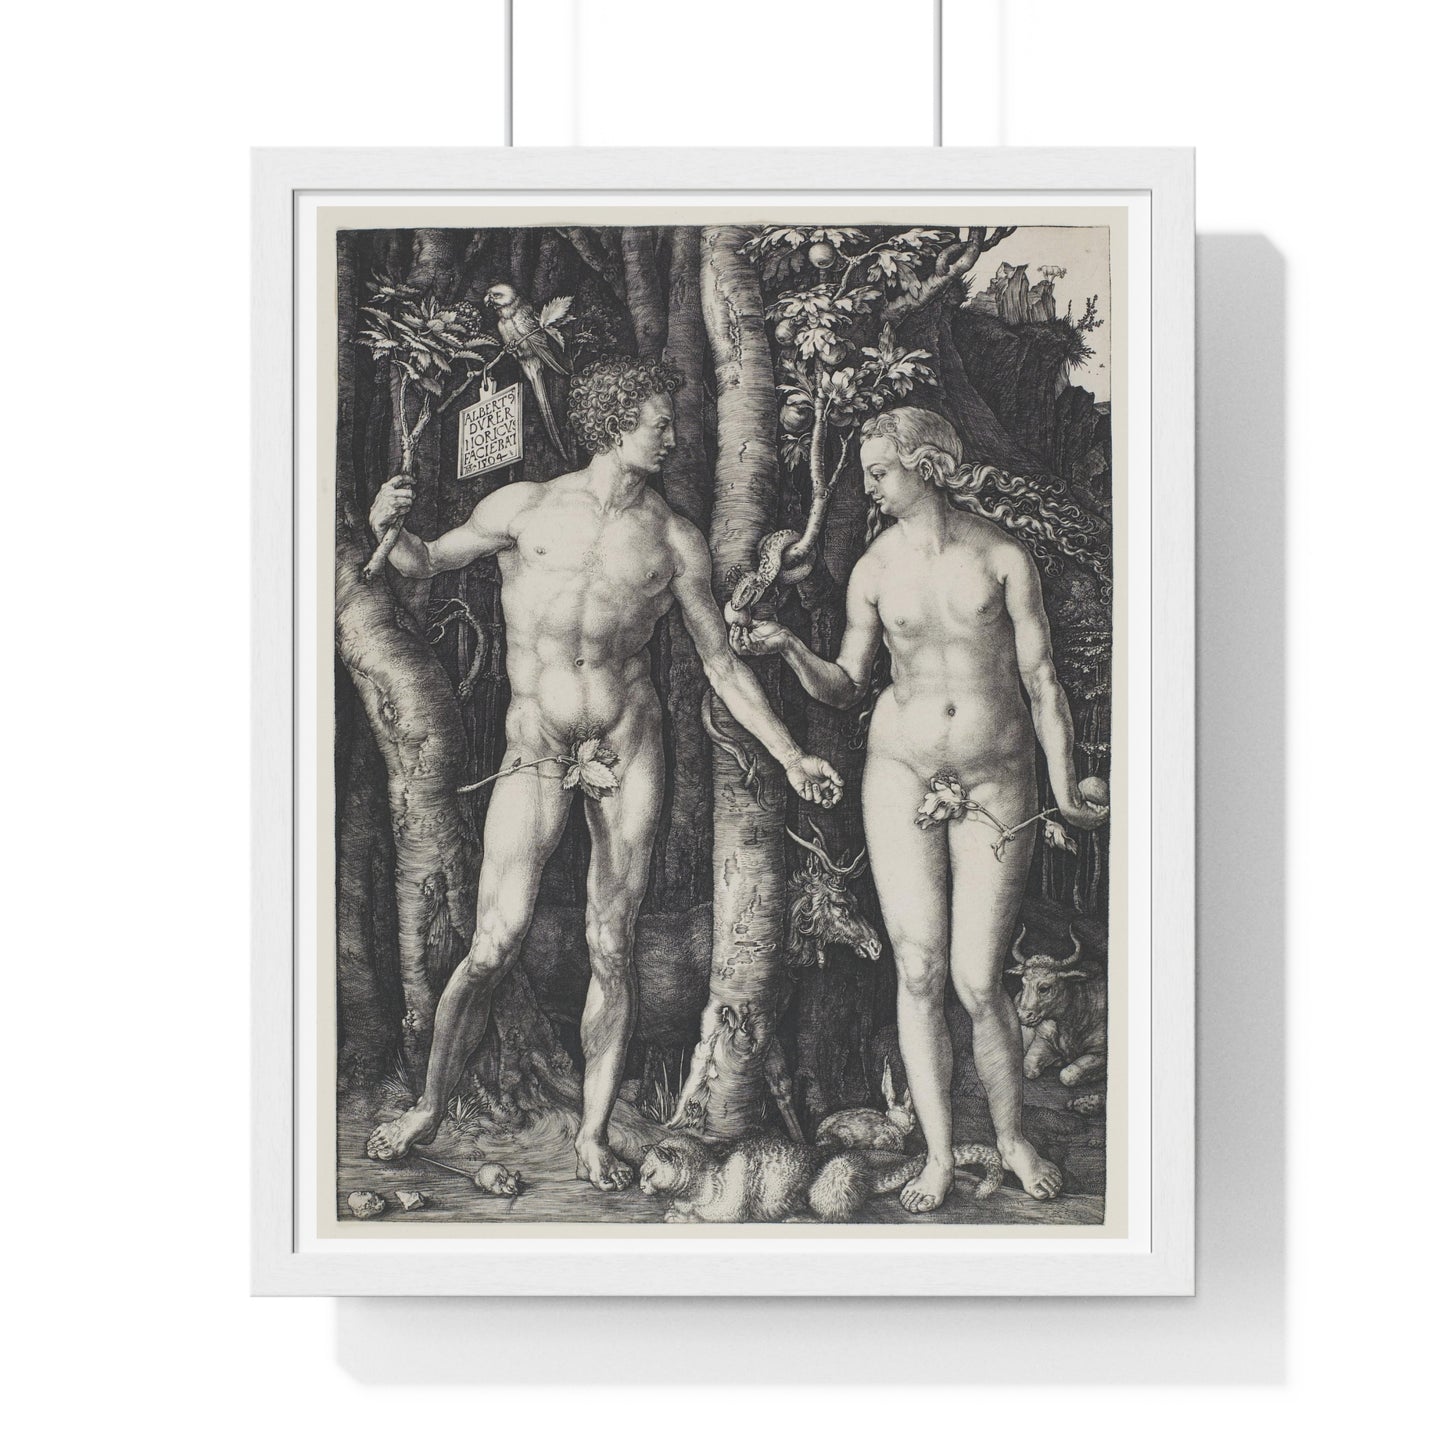 Adam and Eve (1504) by Albrecht Dürer from the Original, Framed Art Print